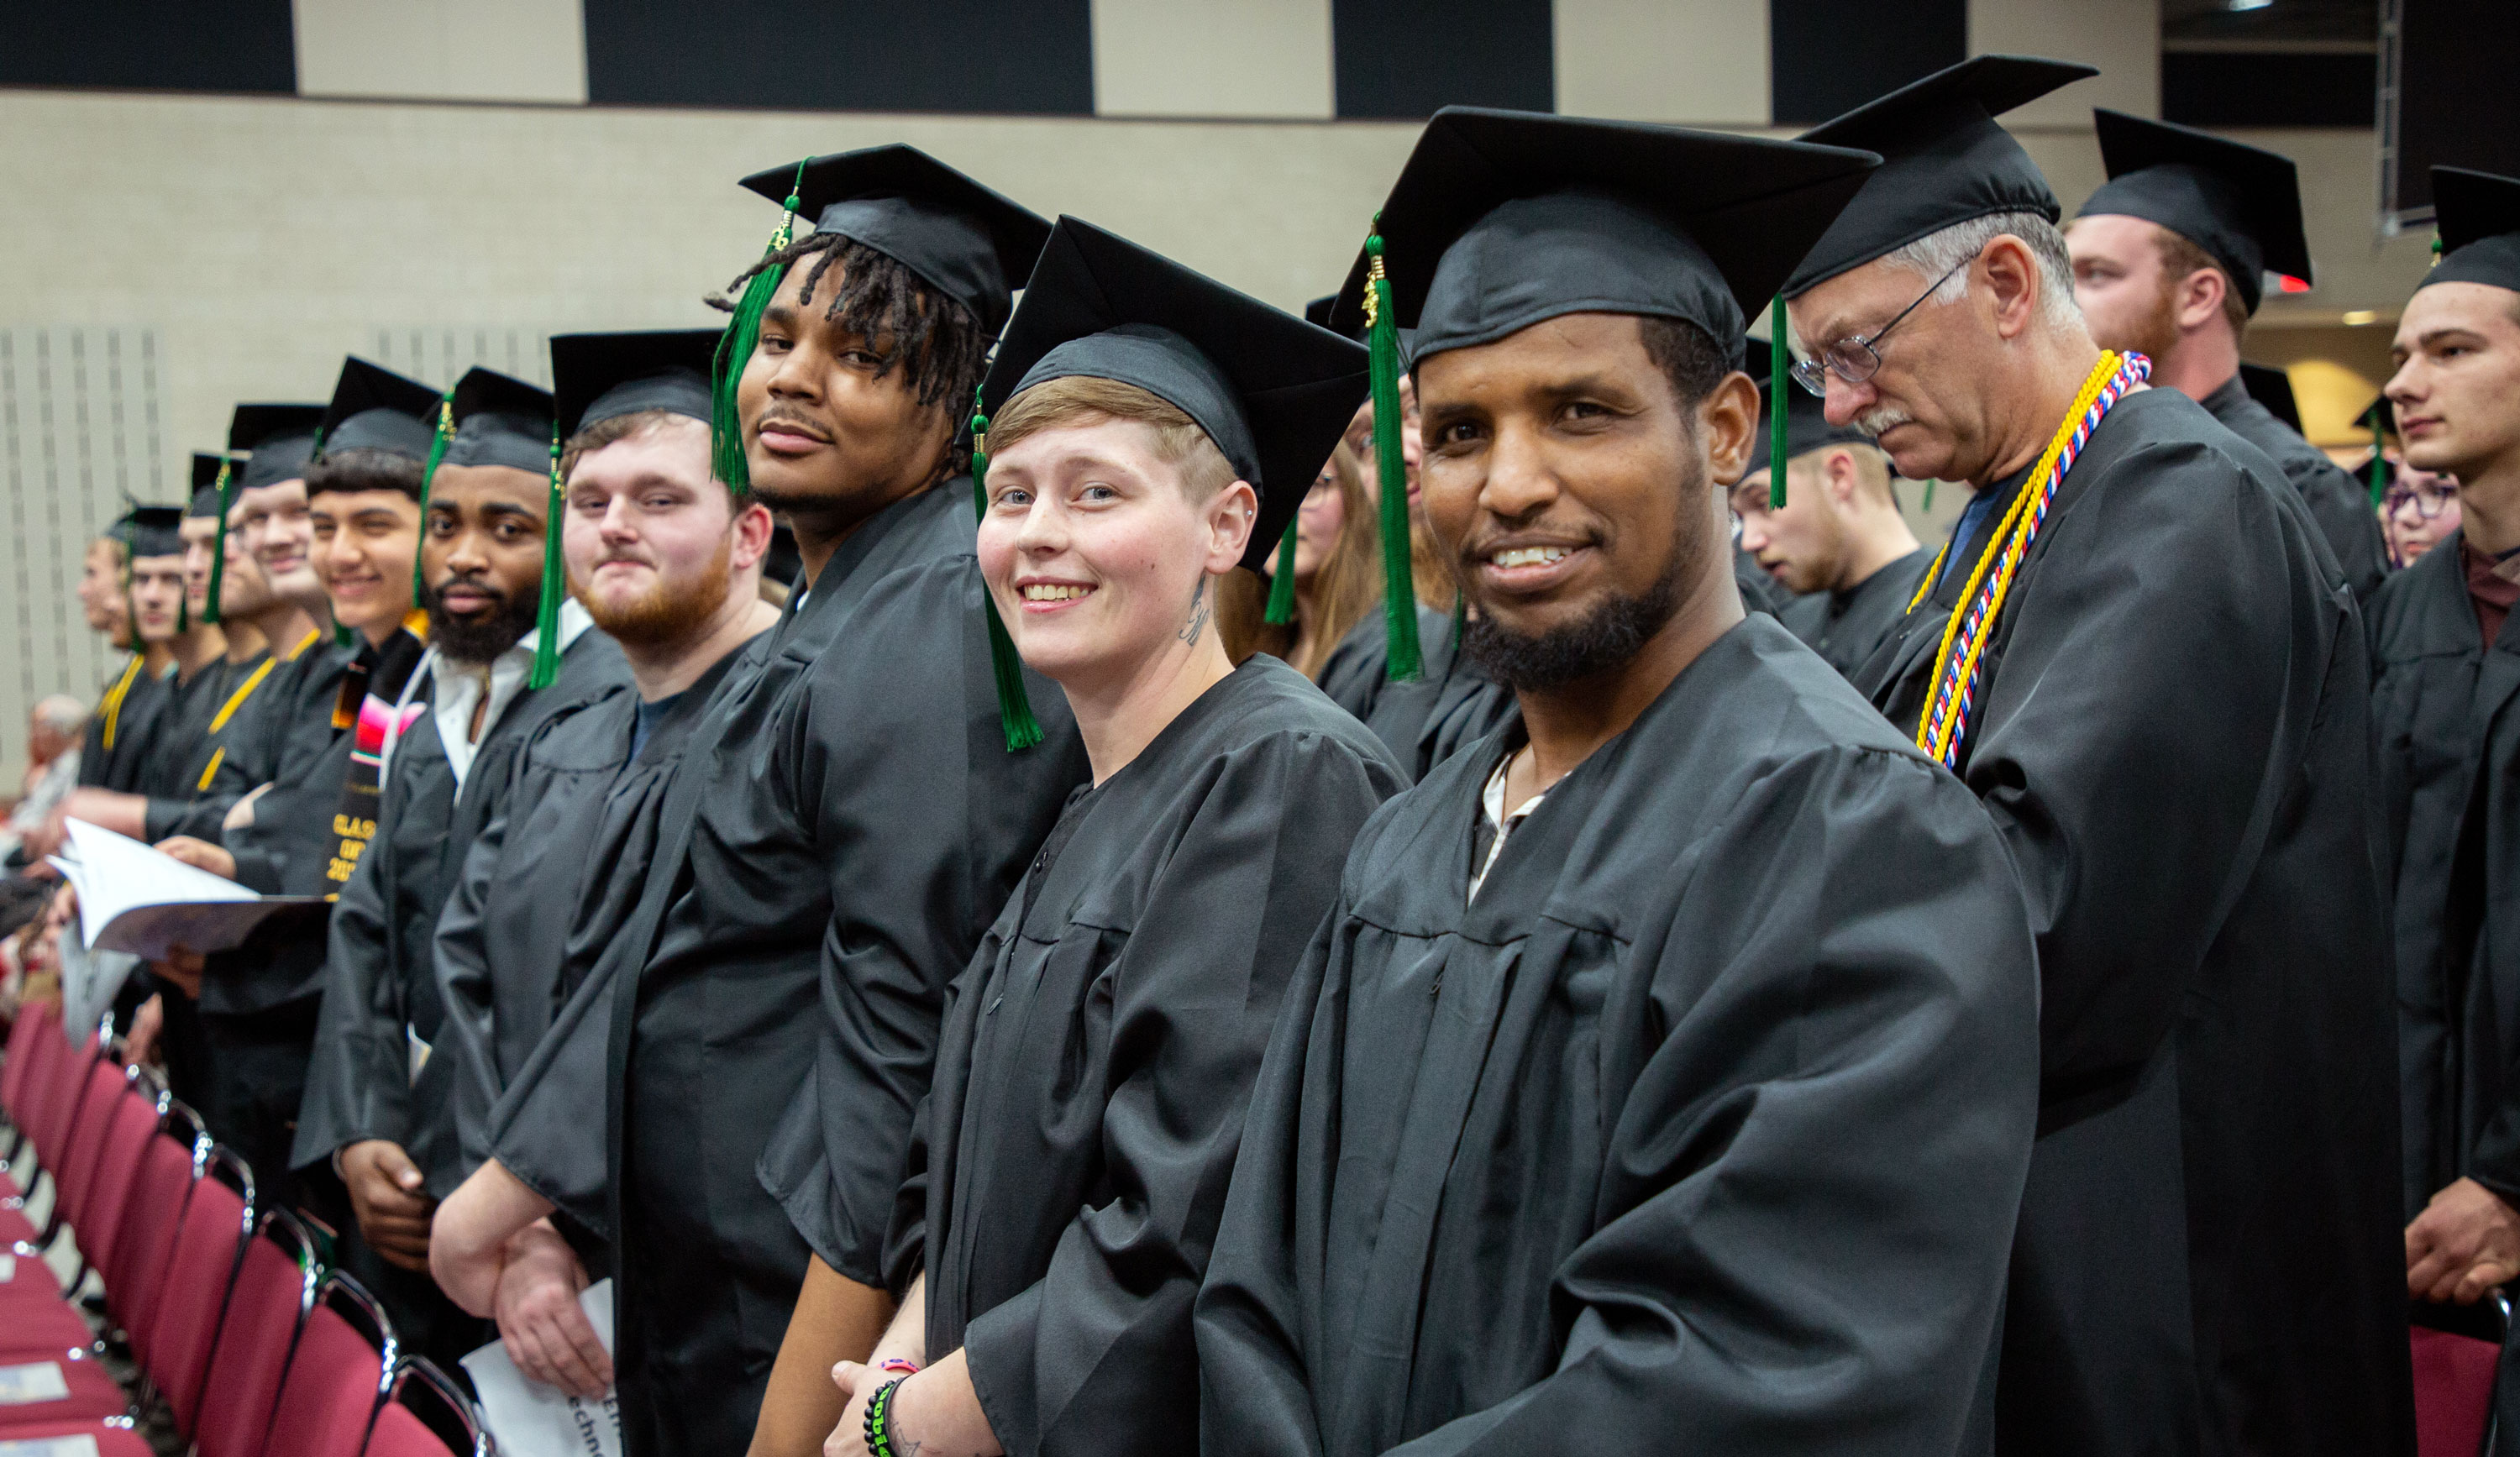 Graduates in regalia smiling at camera